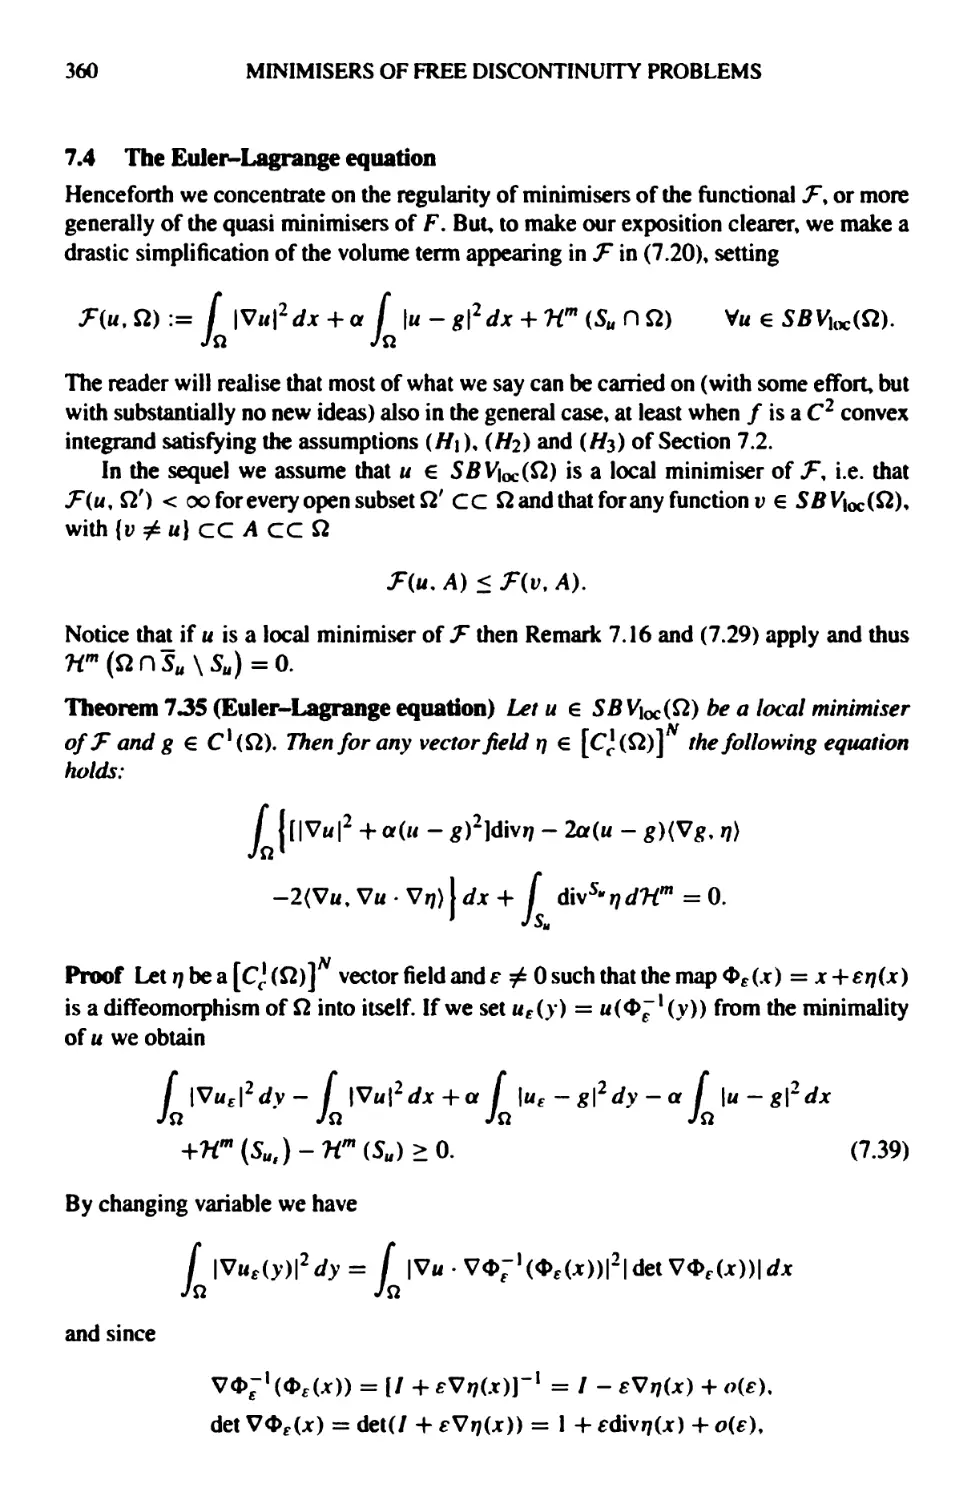 7.4 The Euler-Lagrange equation